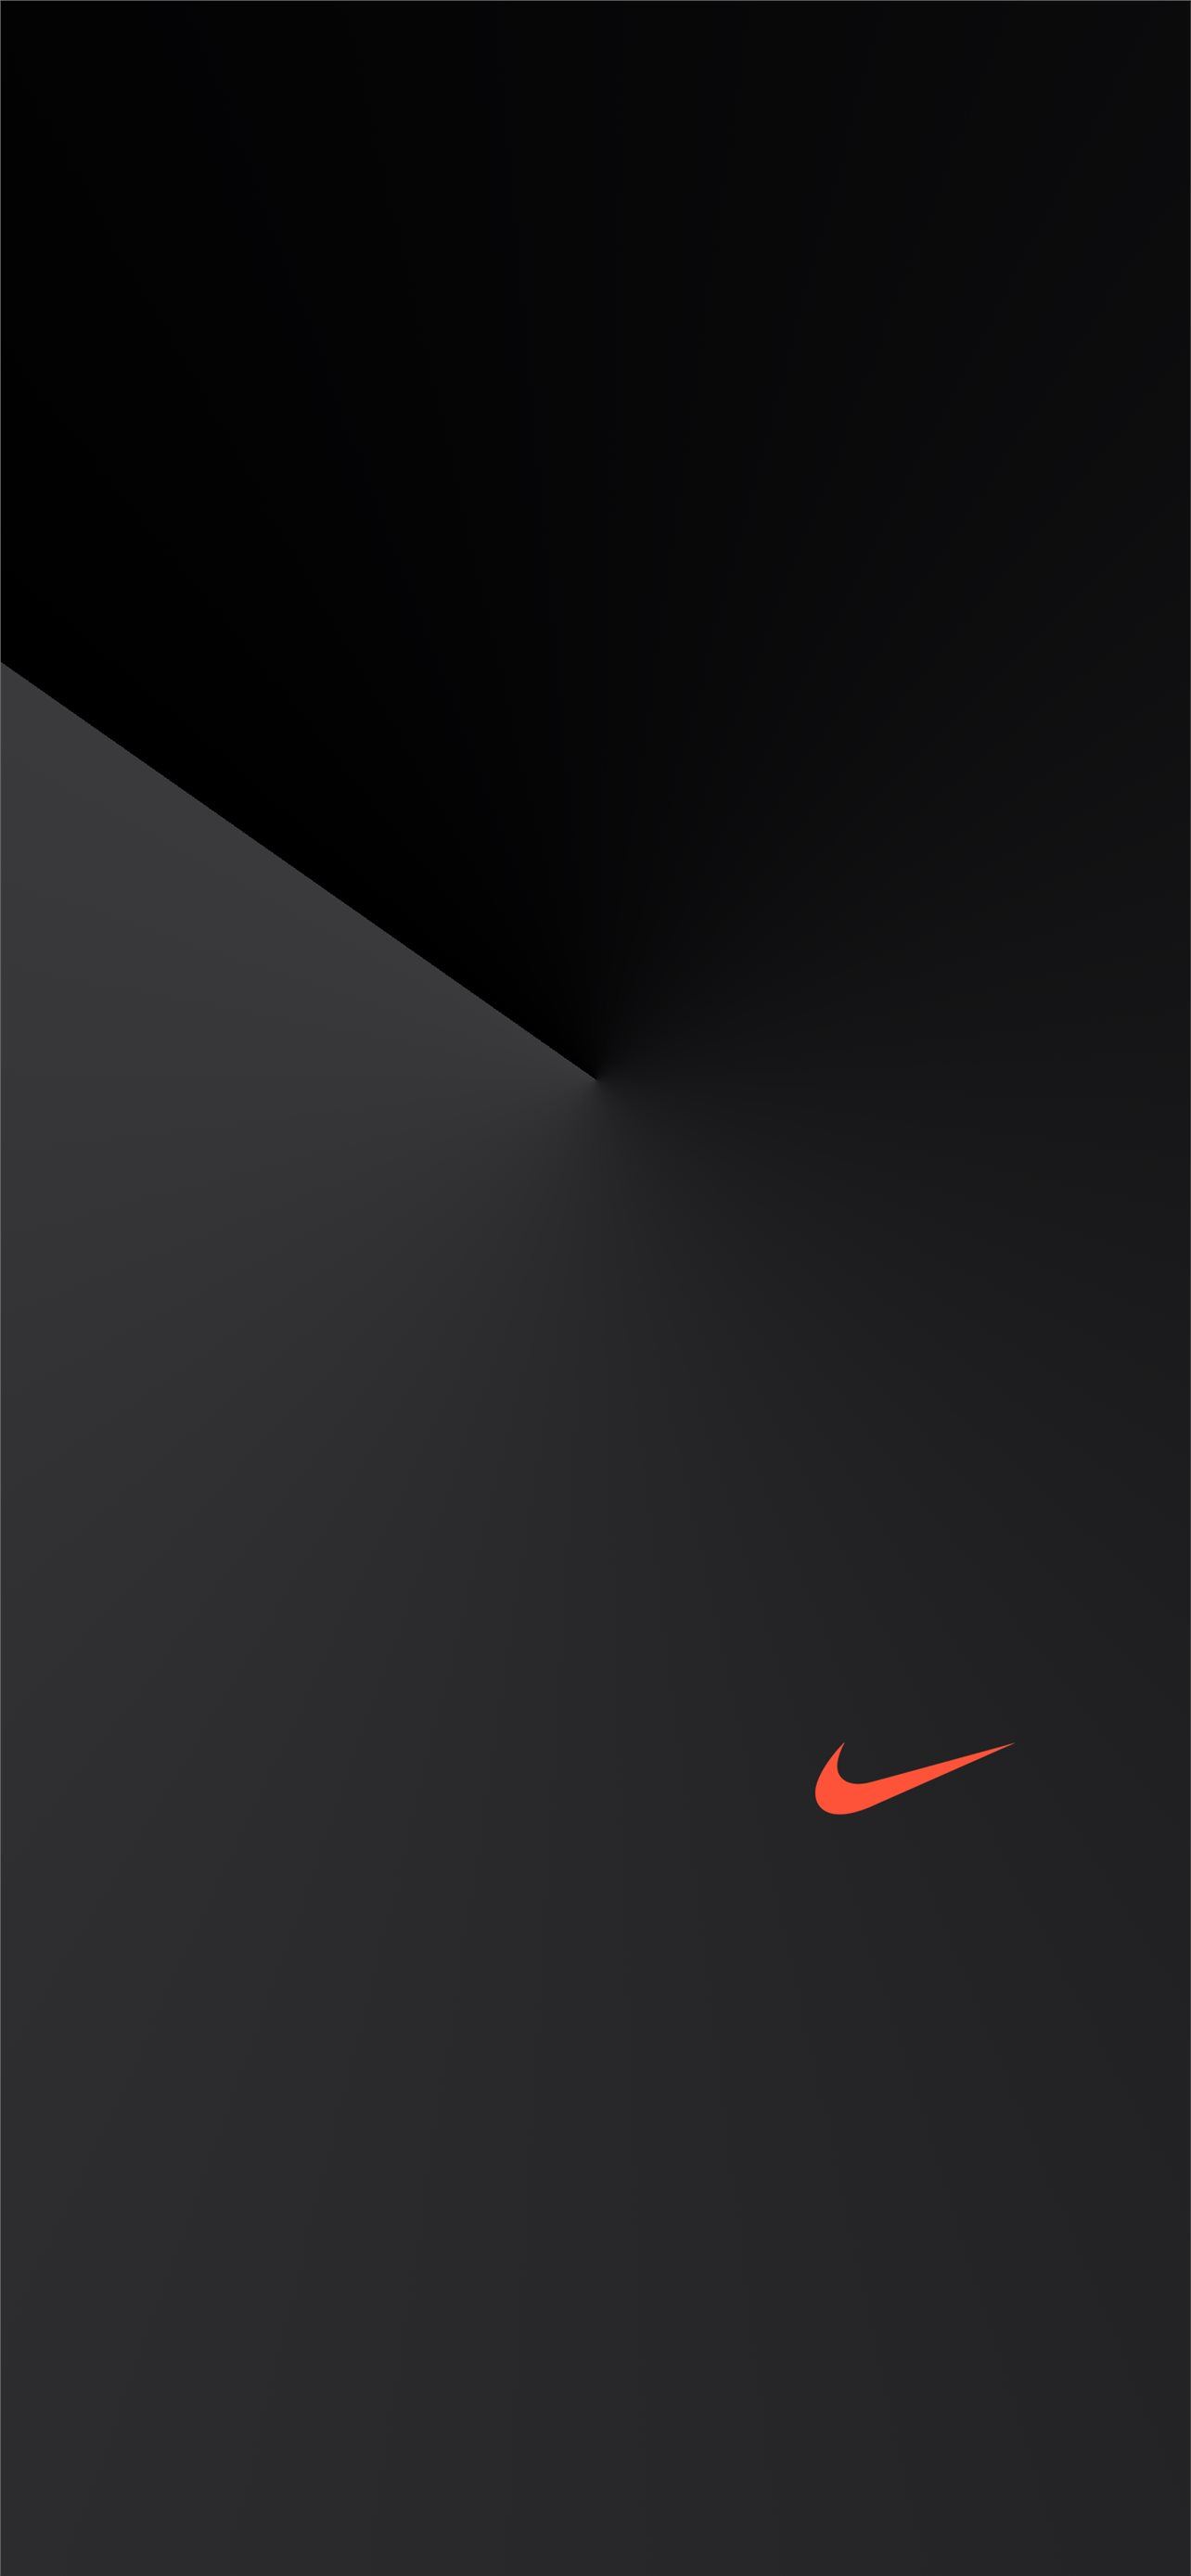 Hình nền Nike màu đen cho iPhone sẽ khiến bạn trở thành một người đam mê thể thao và thời trang. Được thiết kế với màu sắc đen tối, hình ảnh này sẽ làm cho chủ nhân của nó trở nên nổi bật và bắt mắt hơn.